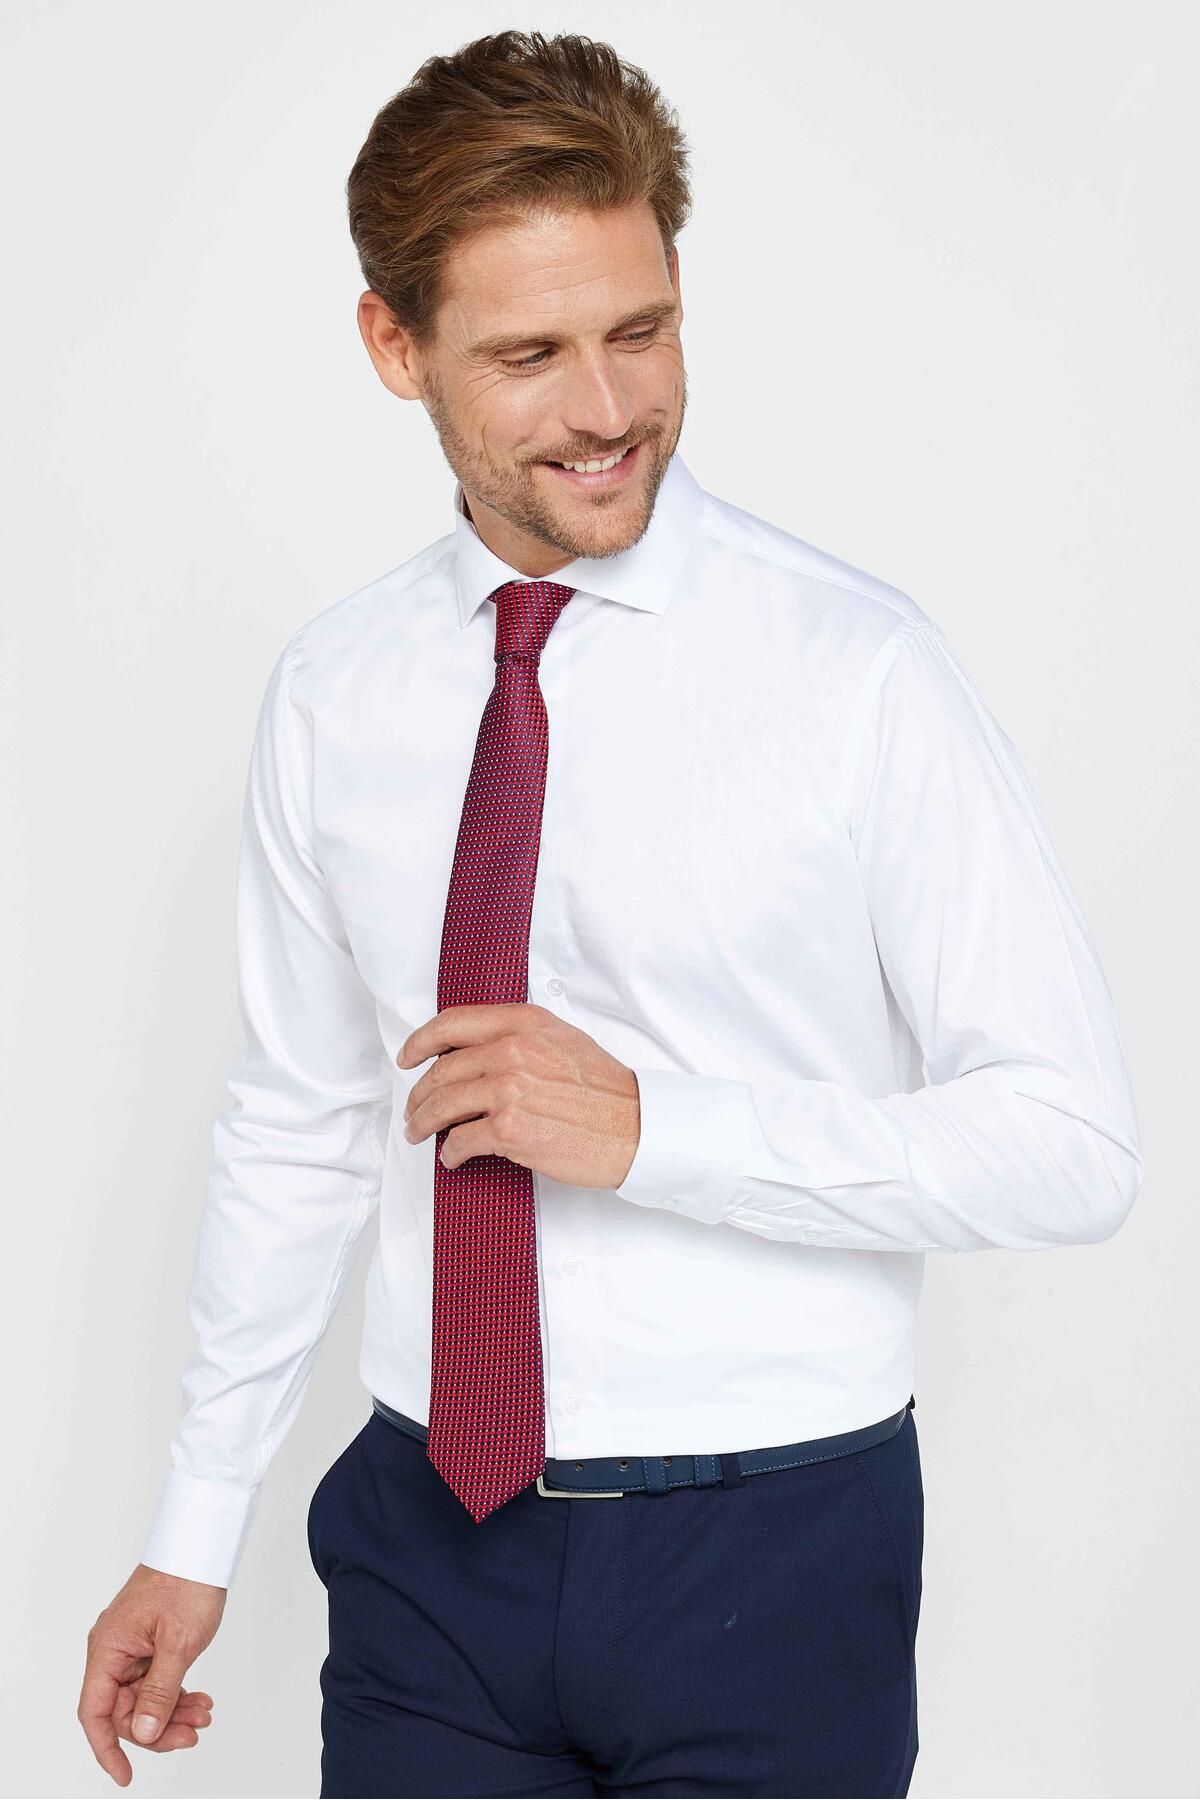 Tudors Slım Fıt Uzun Kollu Yüksek Yaka Premium Seri Cotton Saten Beyaz Gömlek